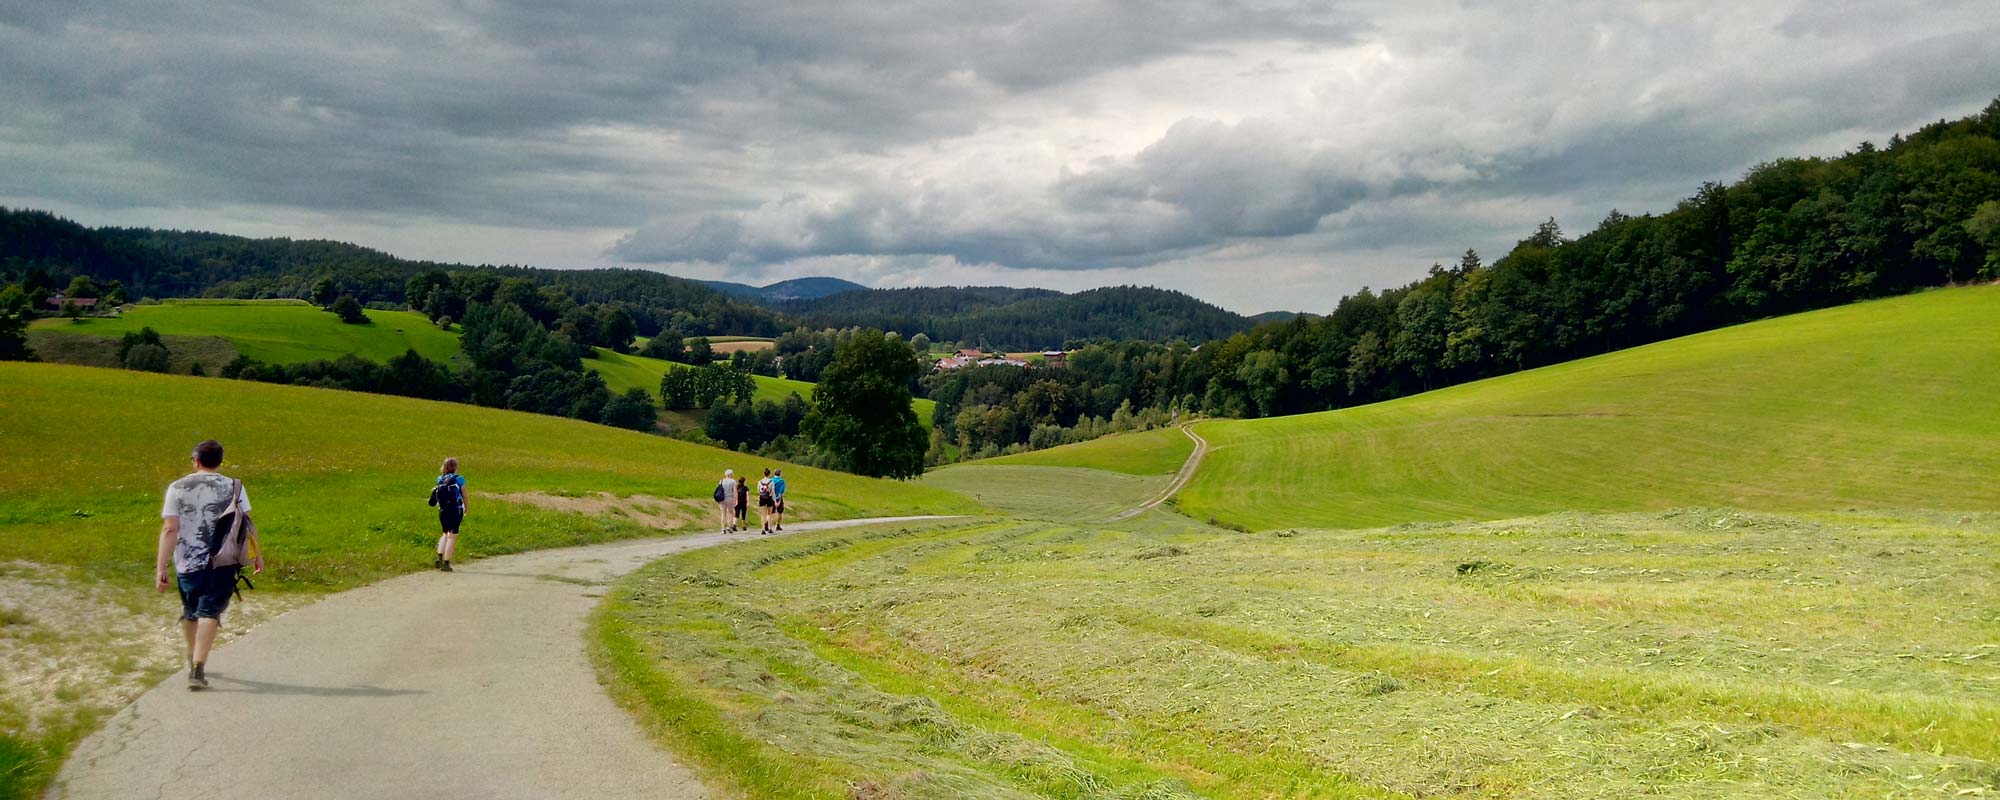 Wandern in der Urlaubsregion Bayerischer Wald